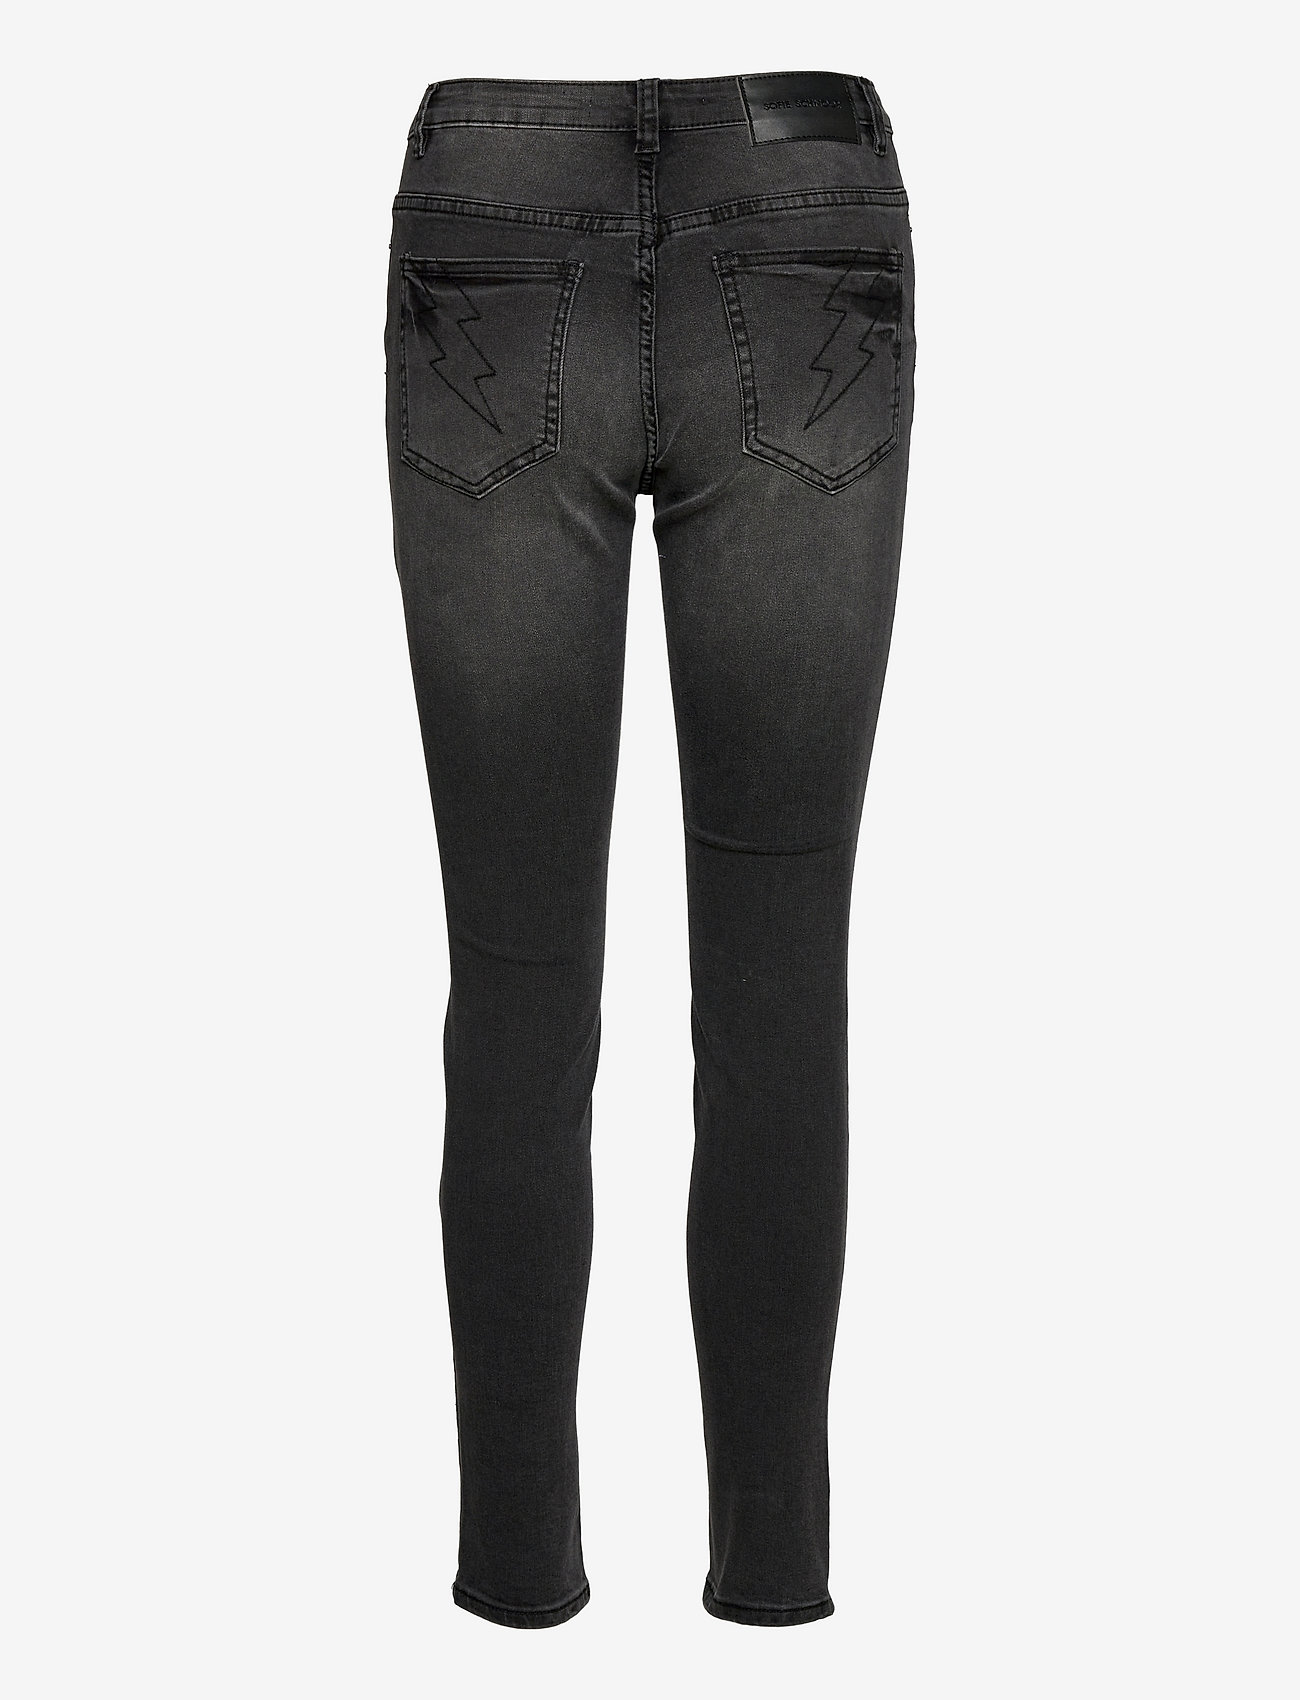 Sofie Schnoor - Jeans - skinny jeans - black - 1